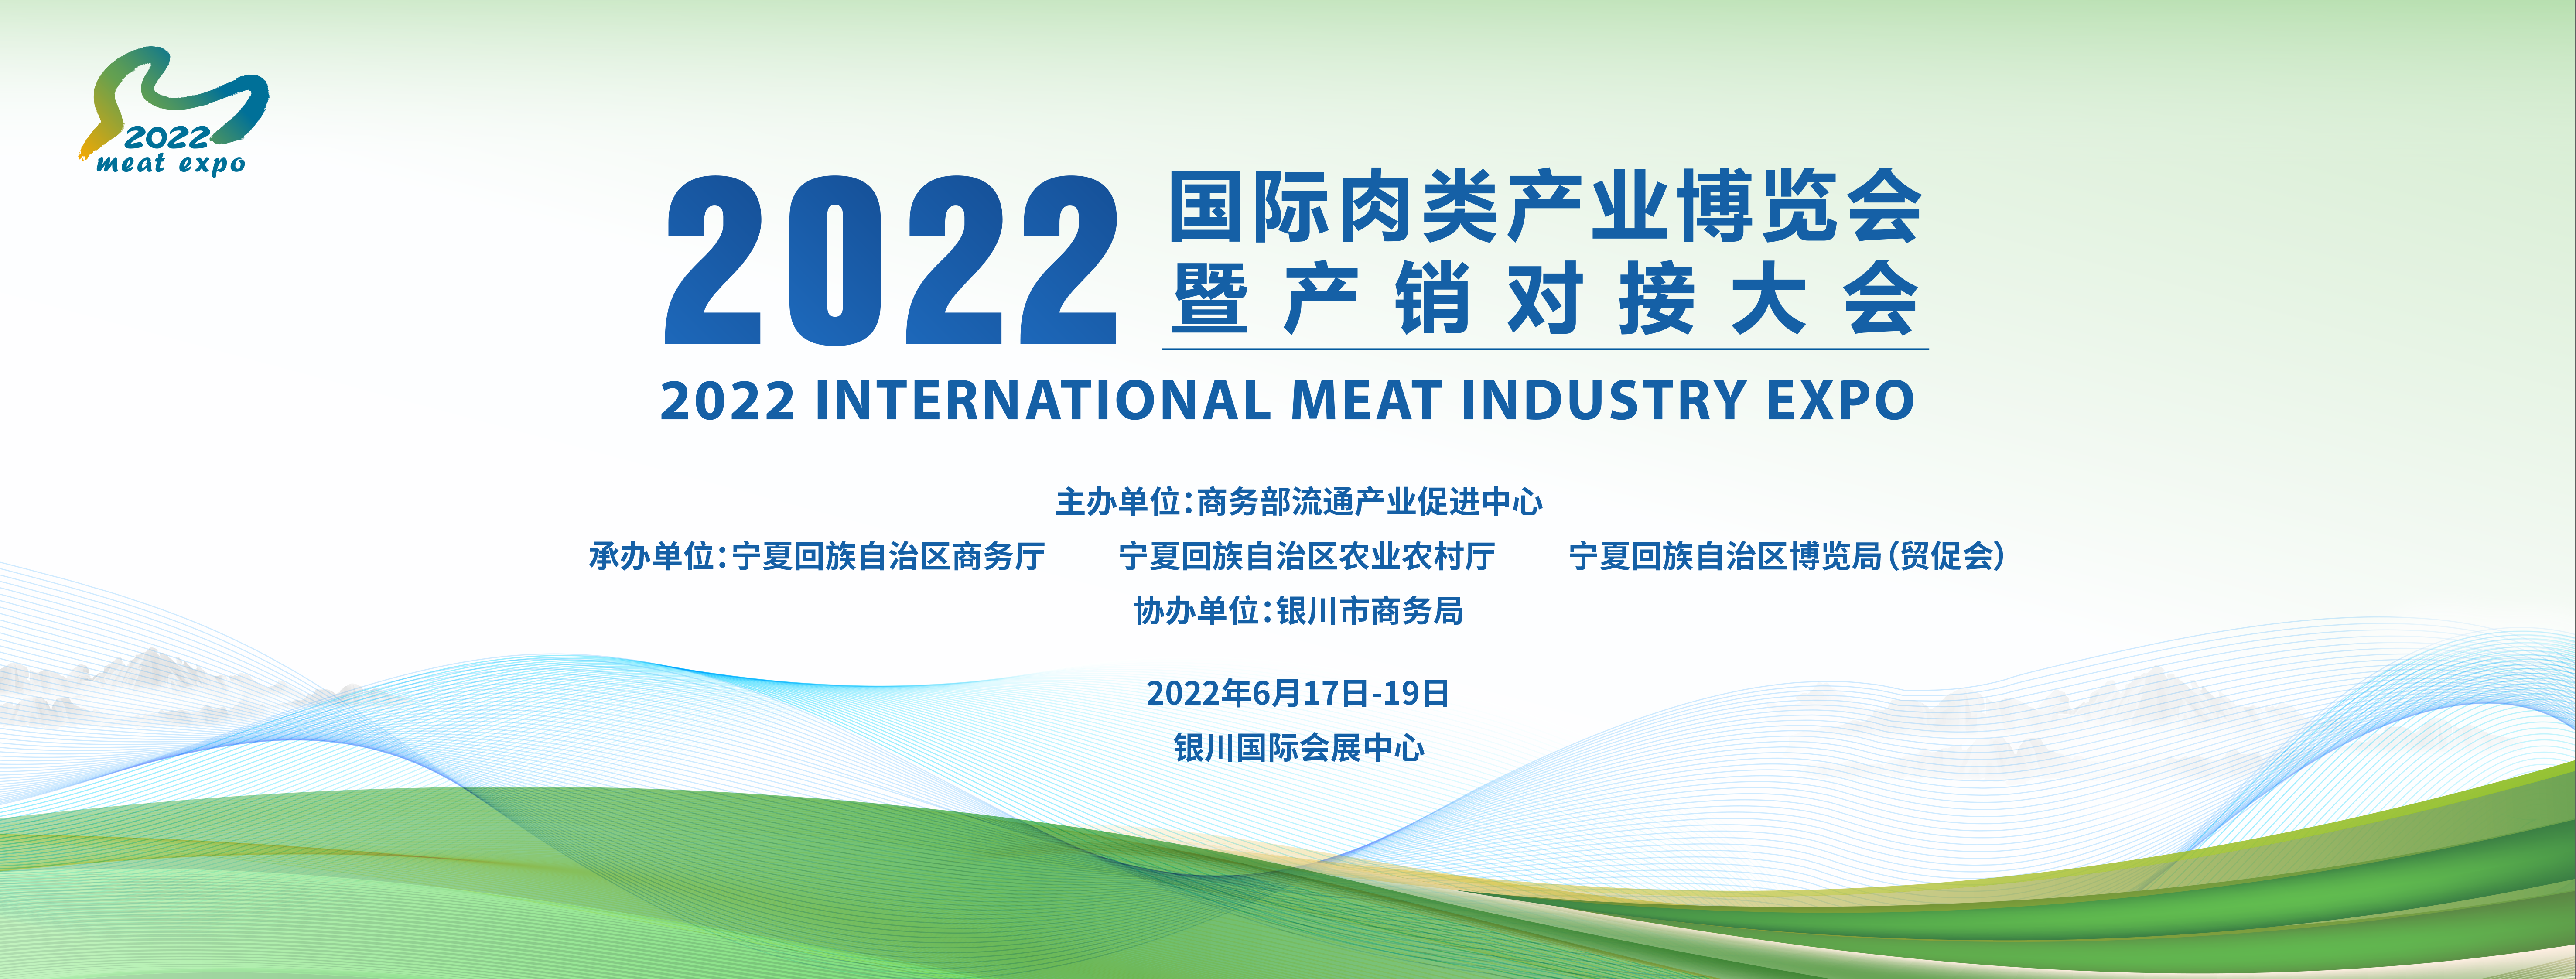 2022国际肉类产业博览会暨产销对接大会